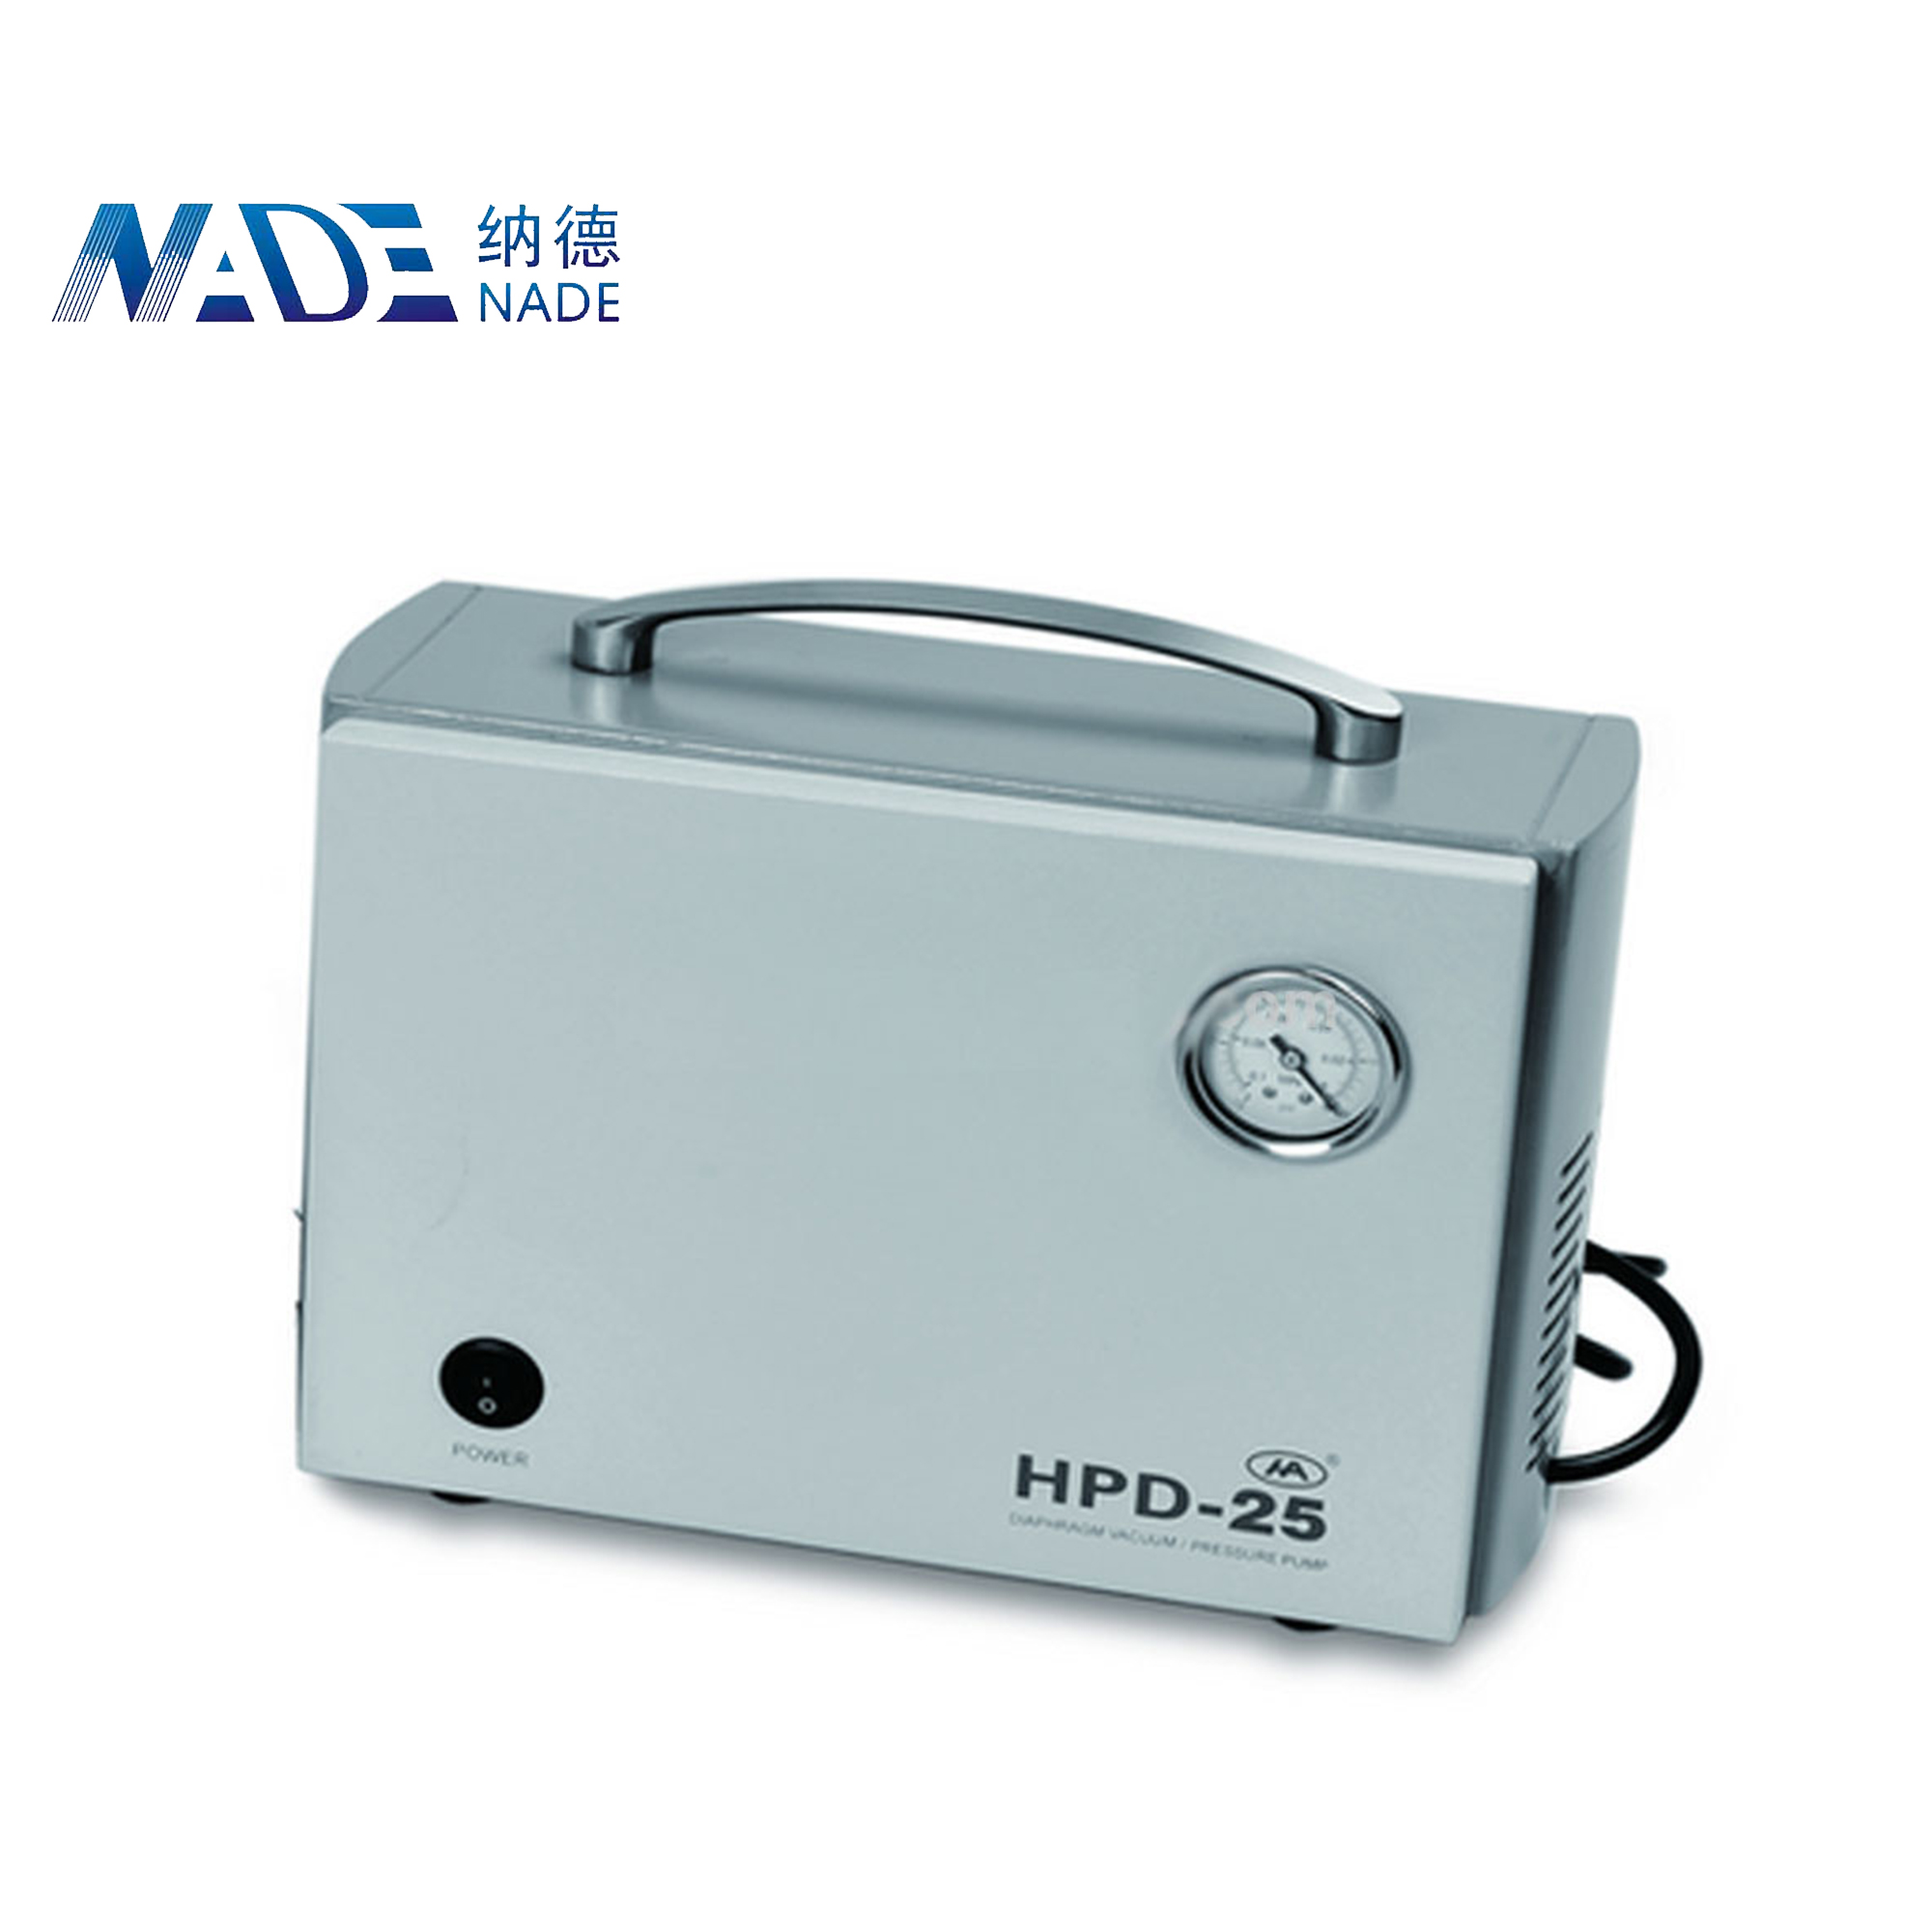 Nade Oilless diaphragm vaccum pump HPD-25B (Anti-corrosion Type) vacuum pump 12v 25L/Min